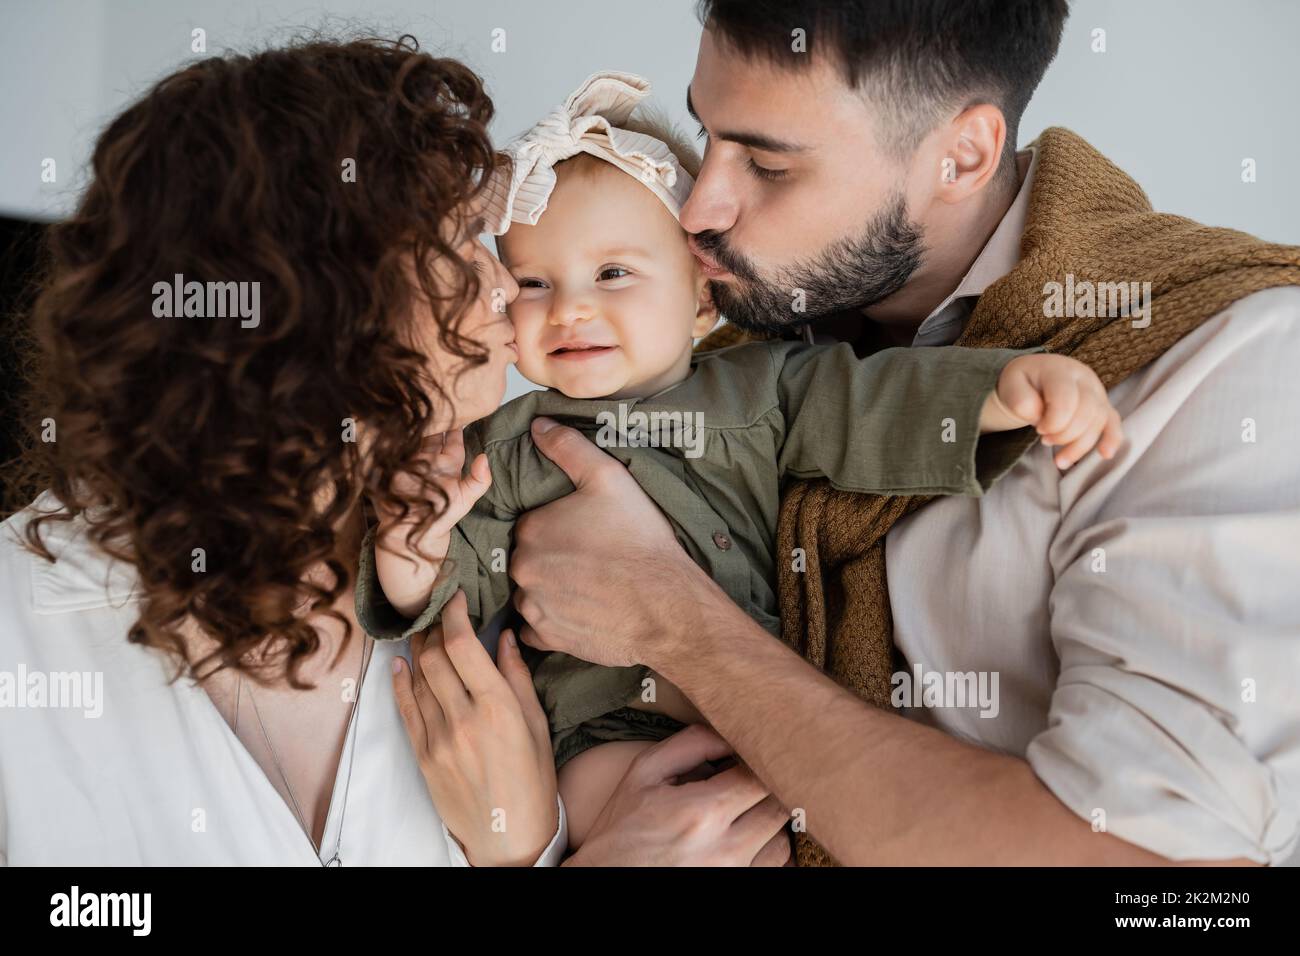 hombre barbudo y mujer rizada besando mejillas de la hija feliz bebé en diadema, imagen de archivo Foto de stock